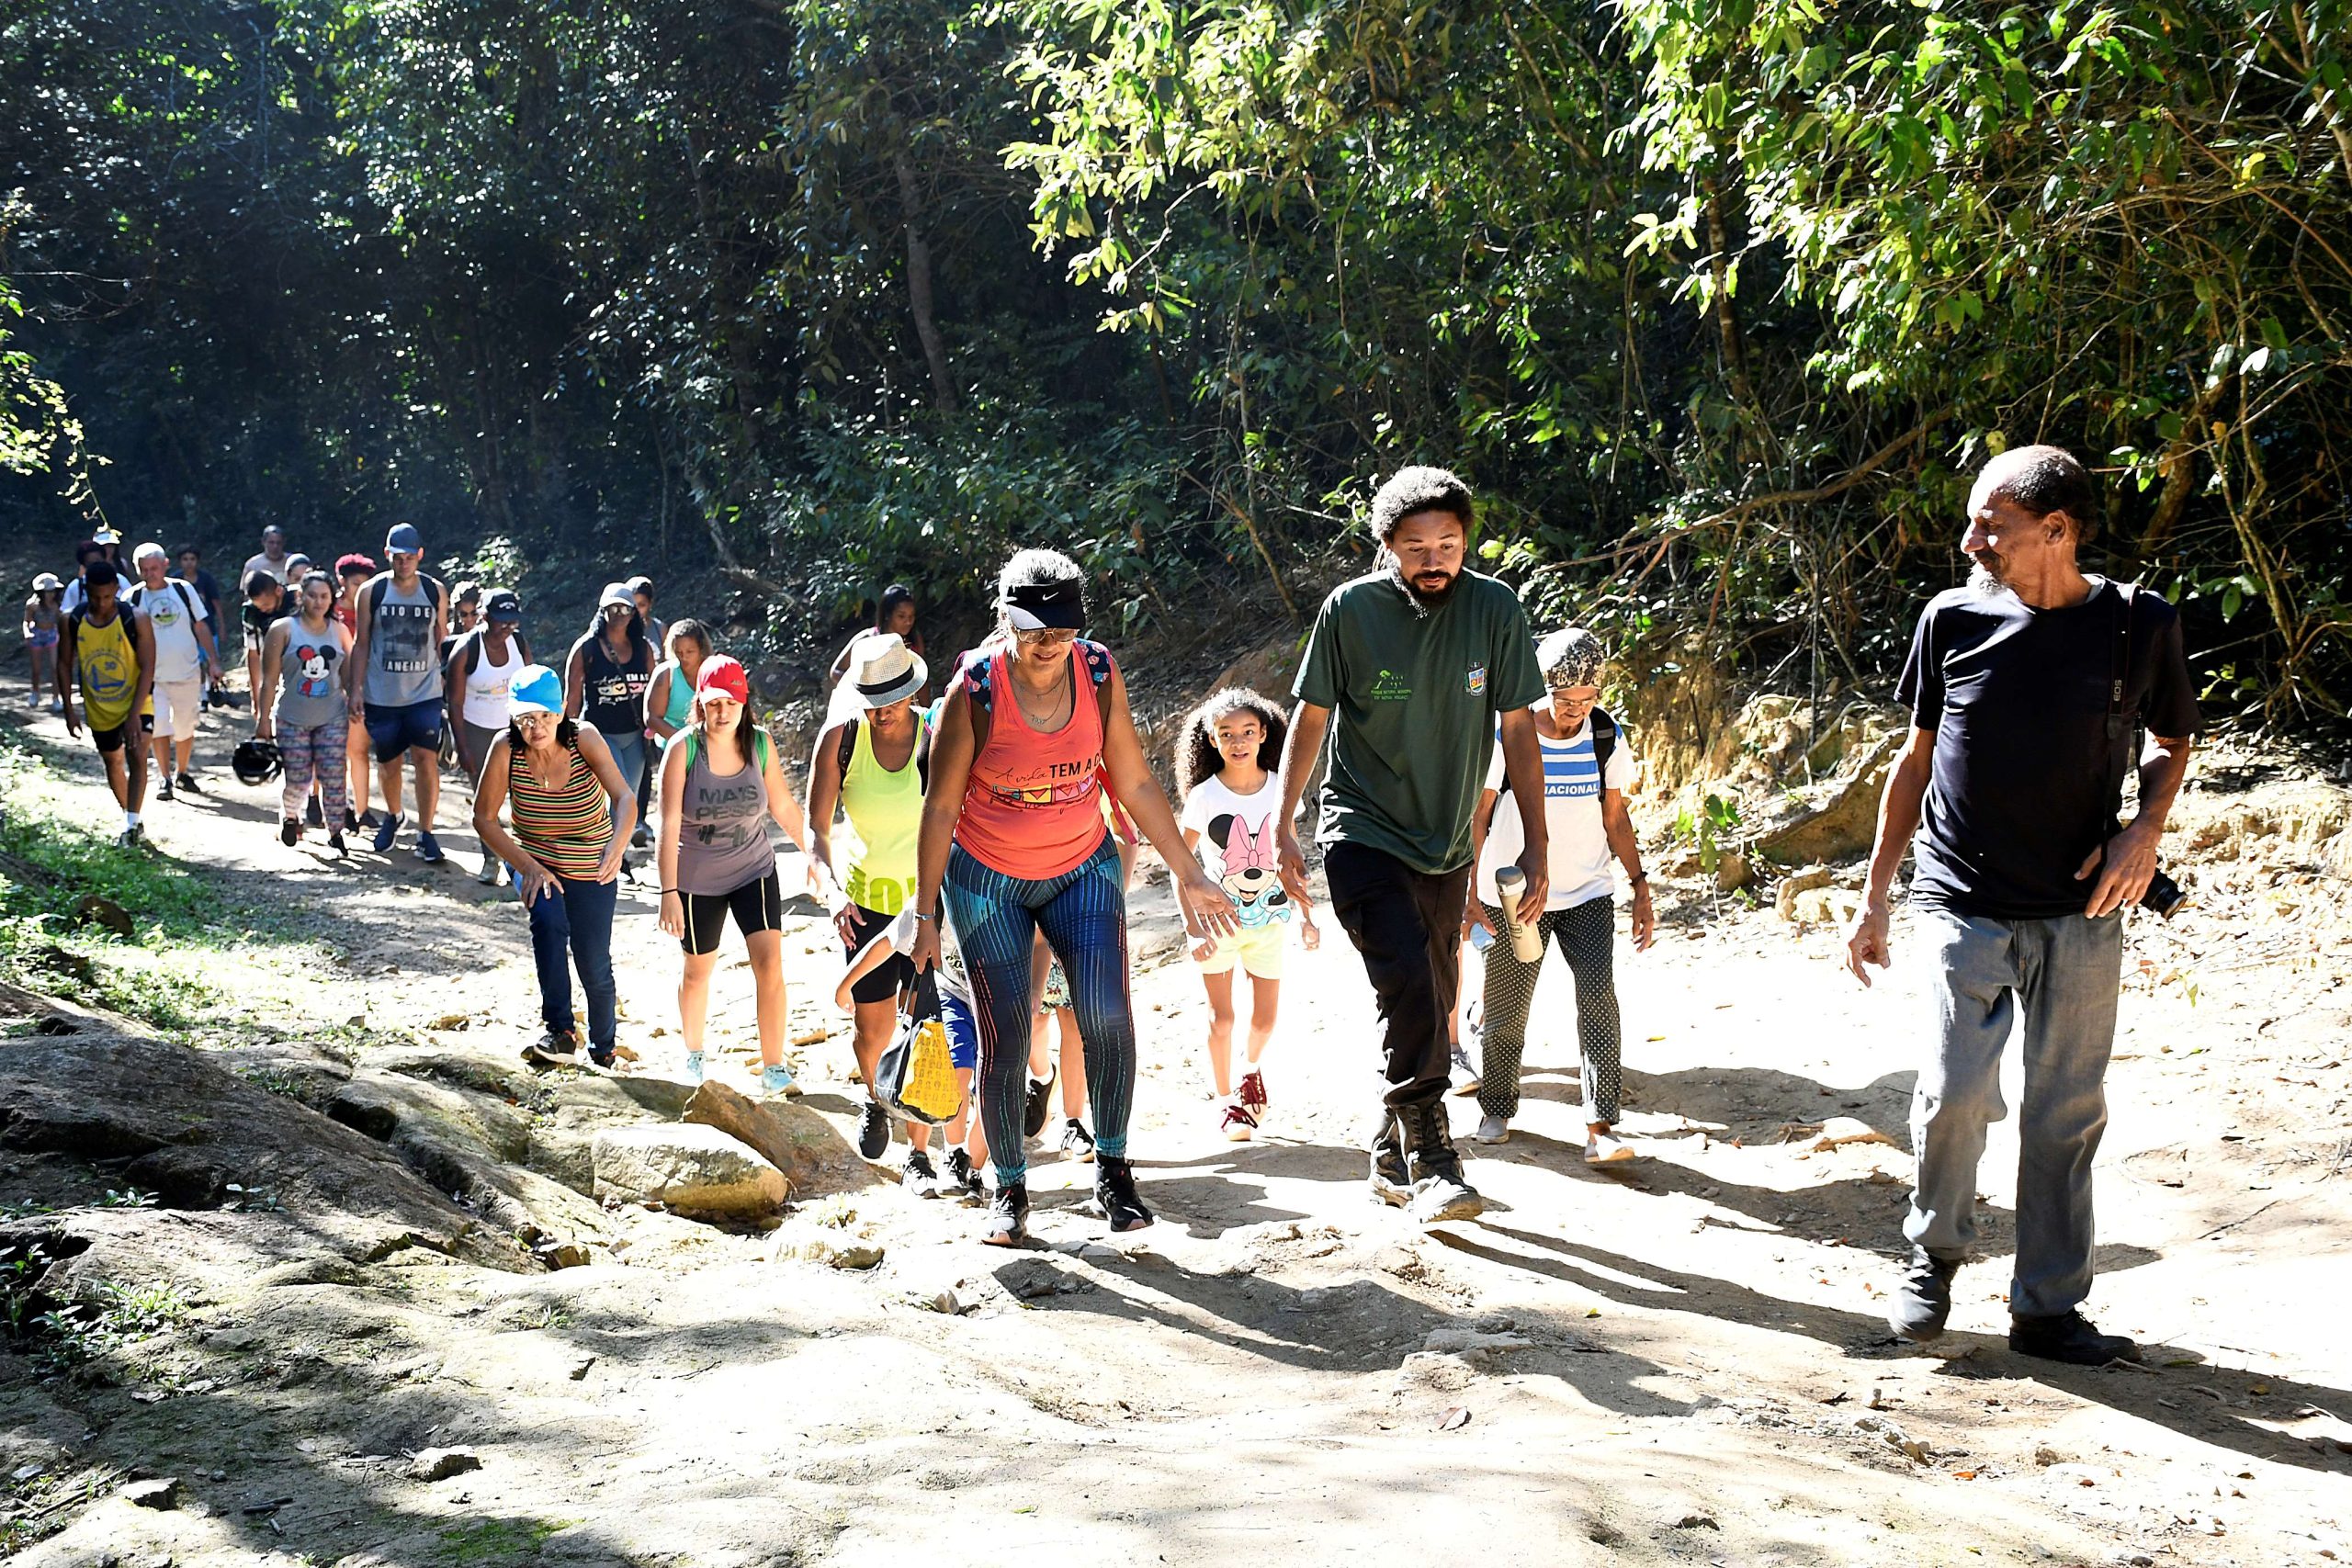 Passeio ciclístico, caminhada e música no Parque Natural Municipal de Nova Iguaçu